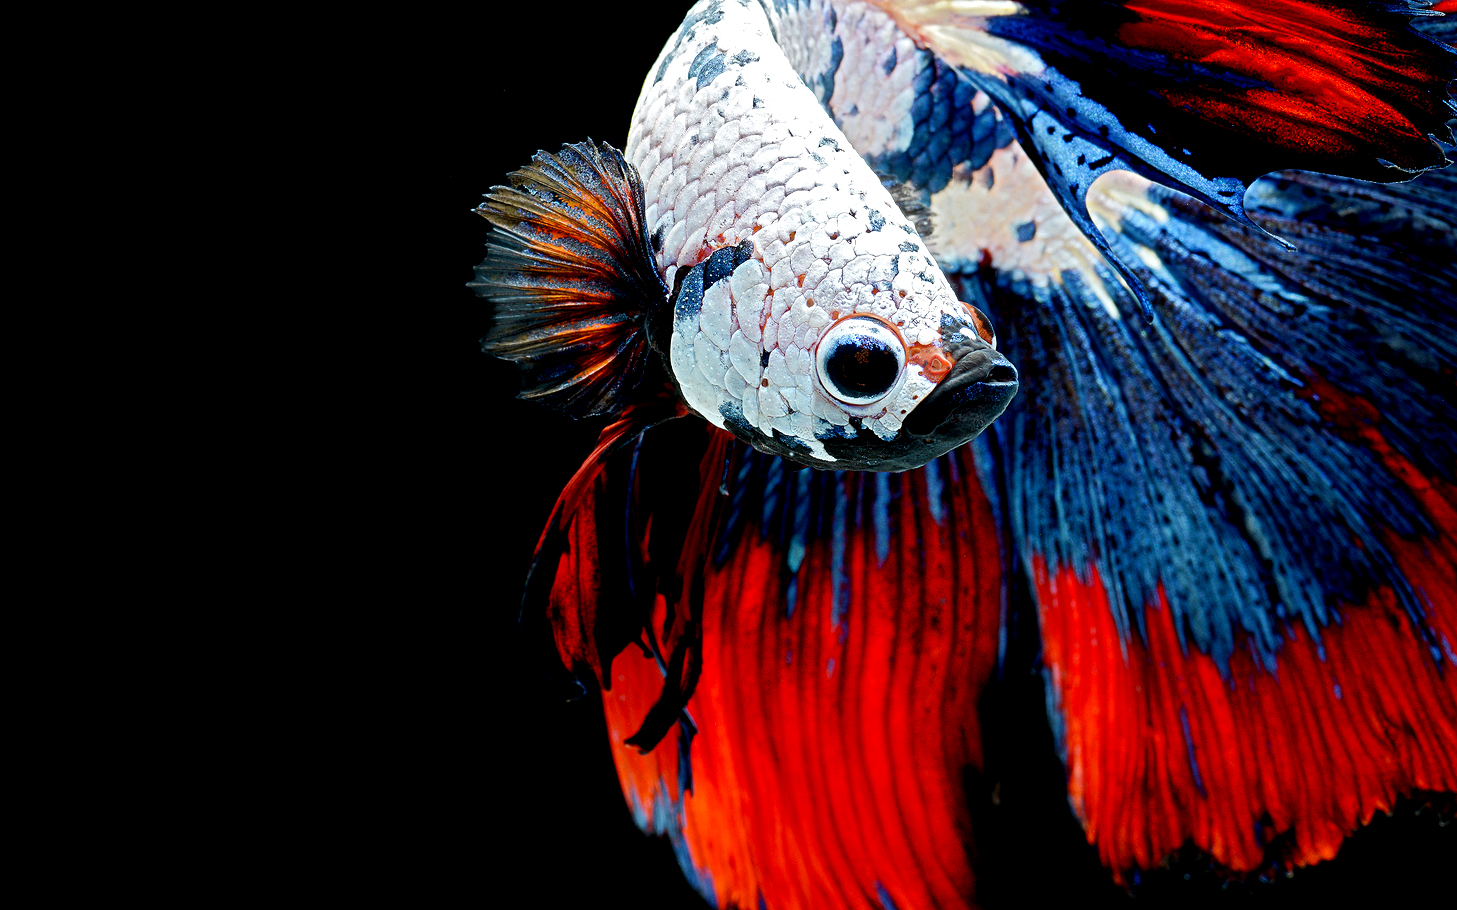 Популярные заставки и фоны Сиамская Бойцовская Рыба на компьютер